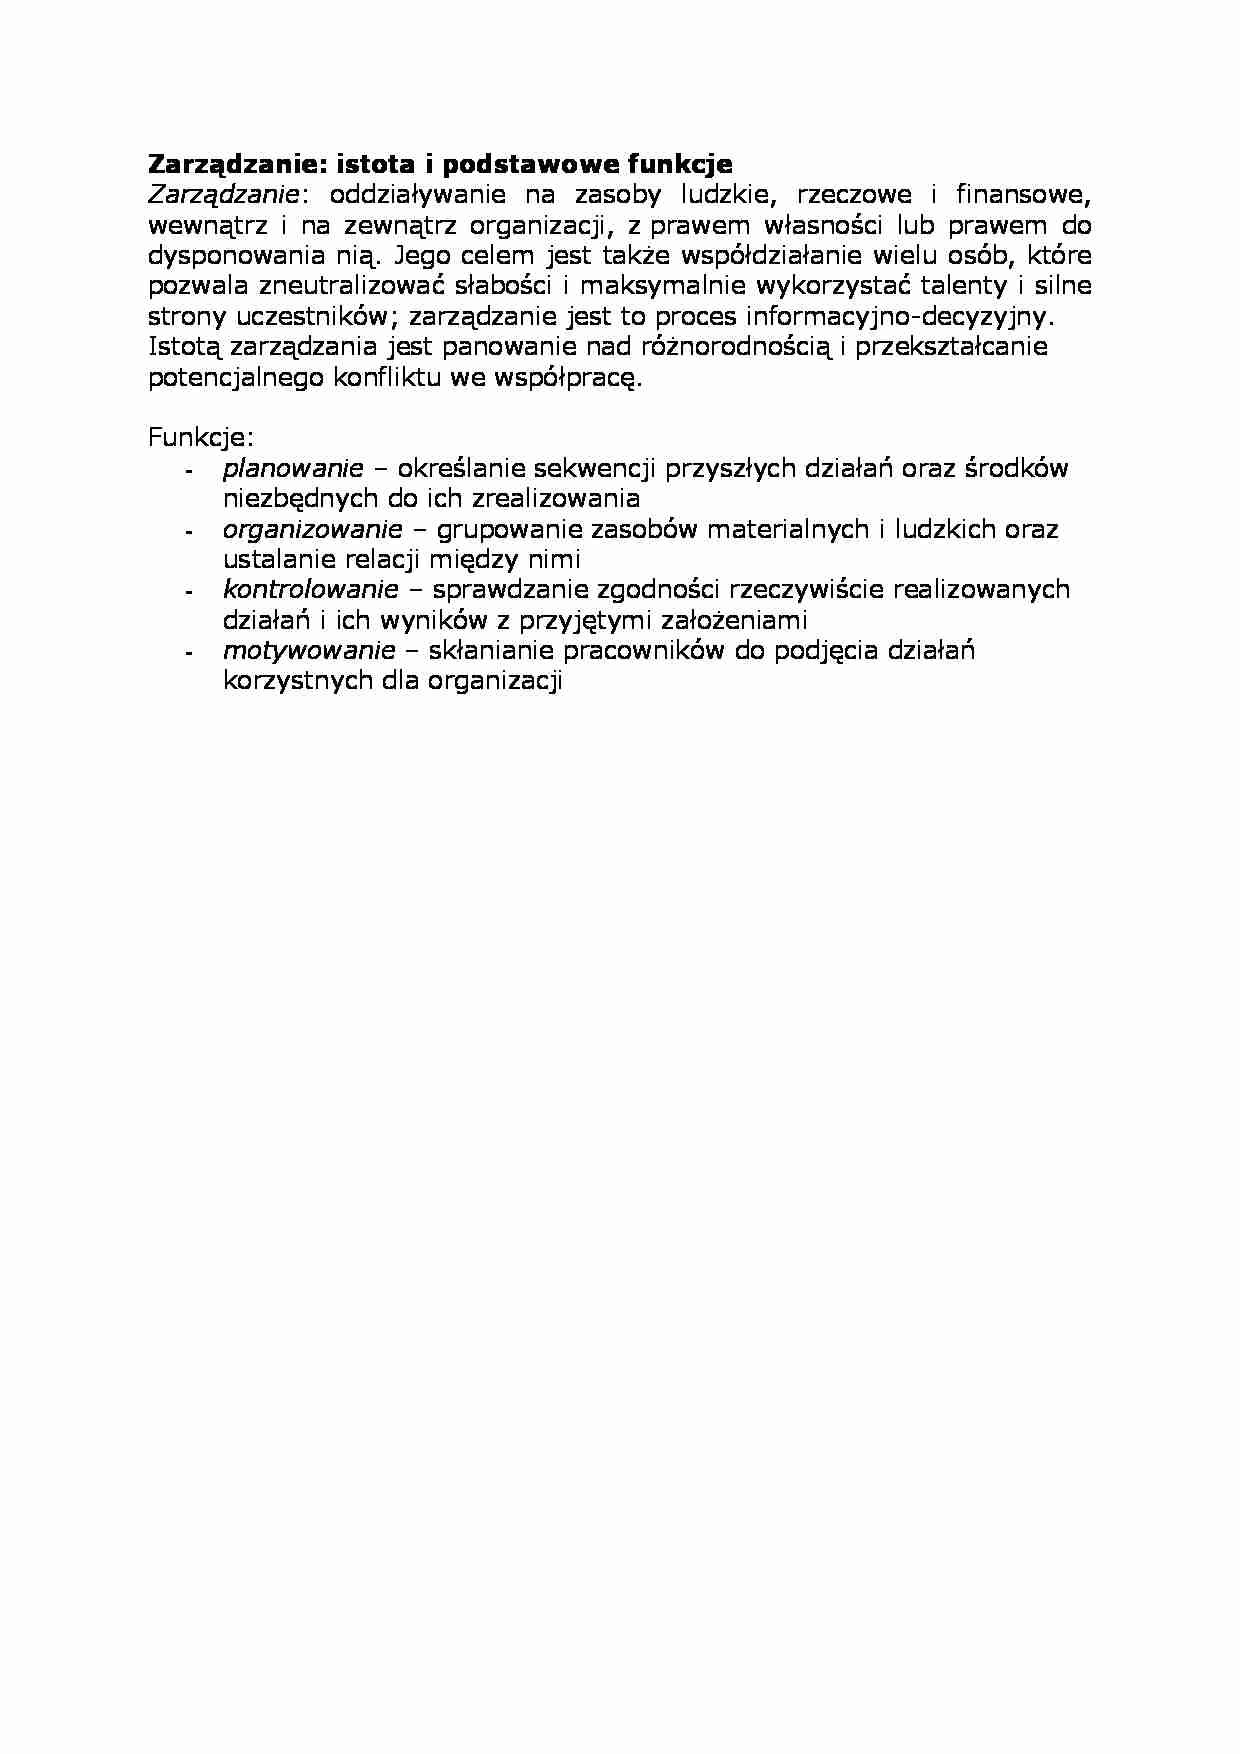 Zarządzanie: istota i podstawowe funkcje - strona 1